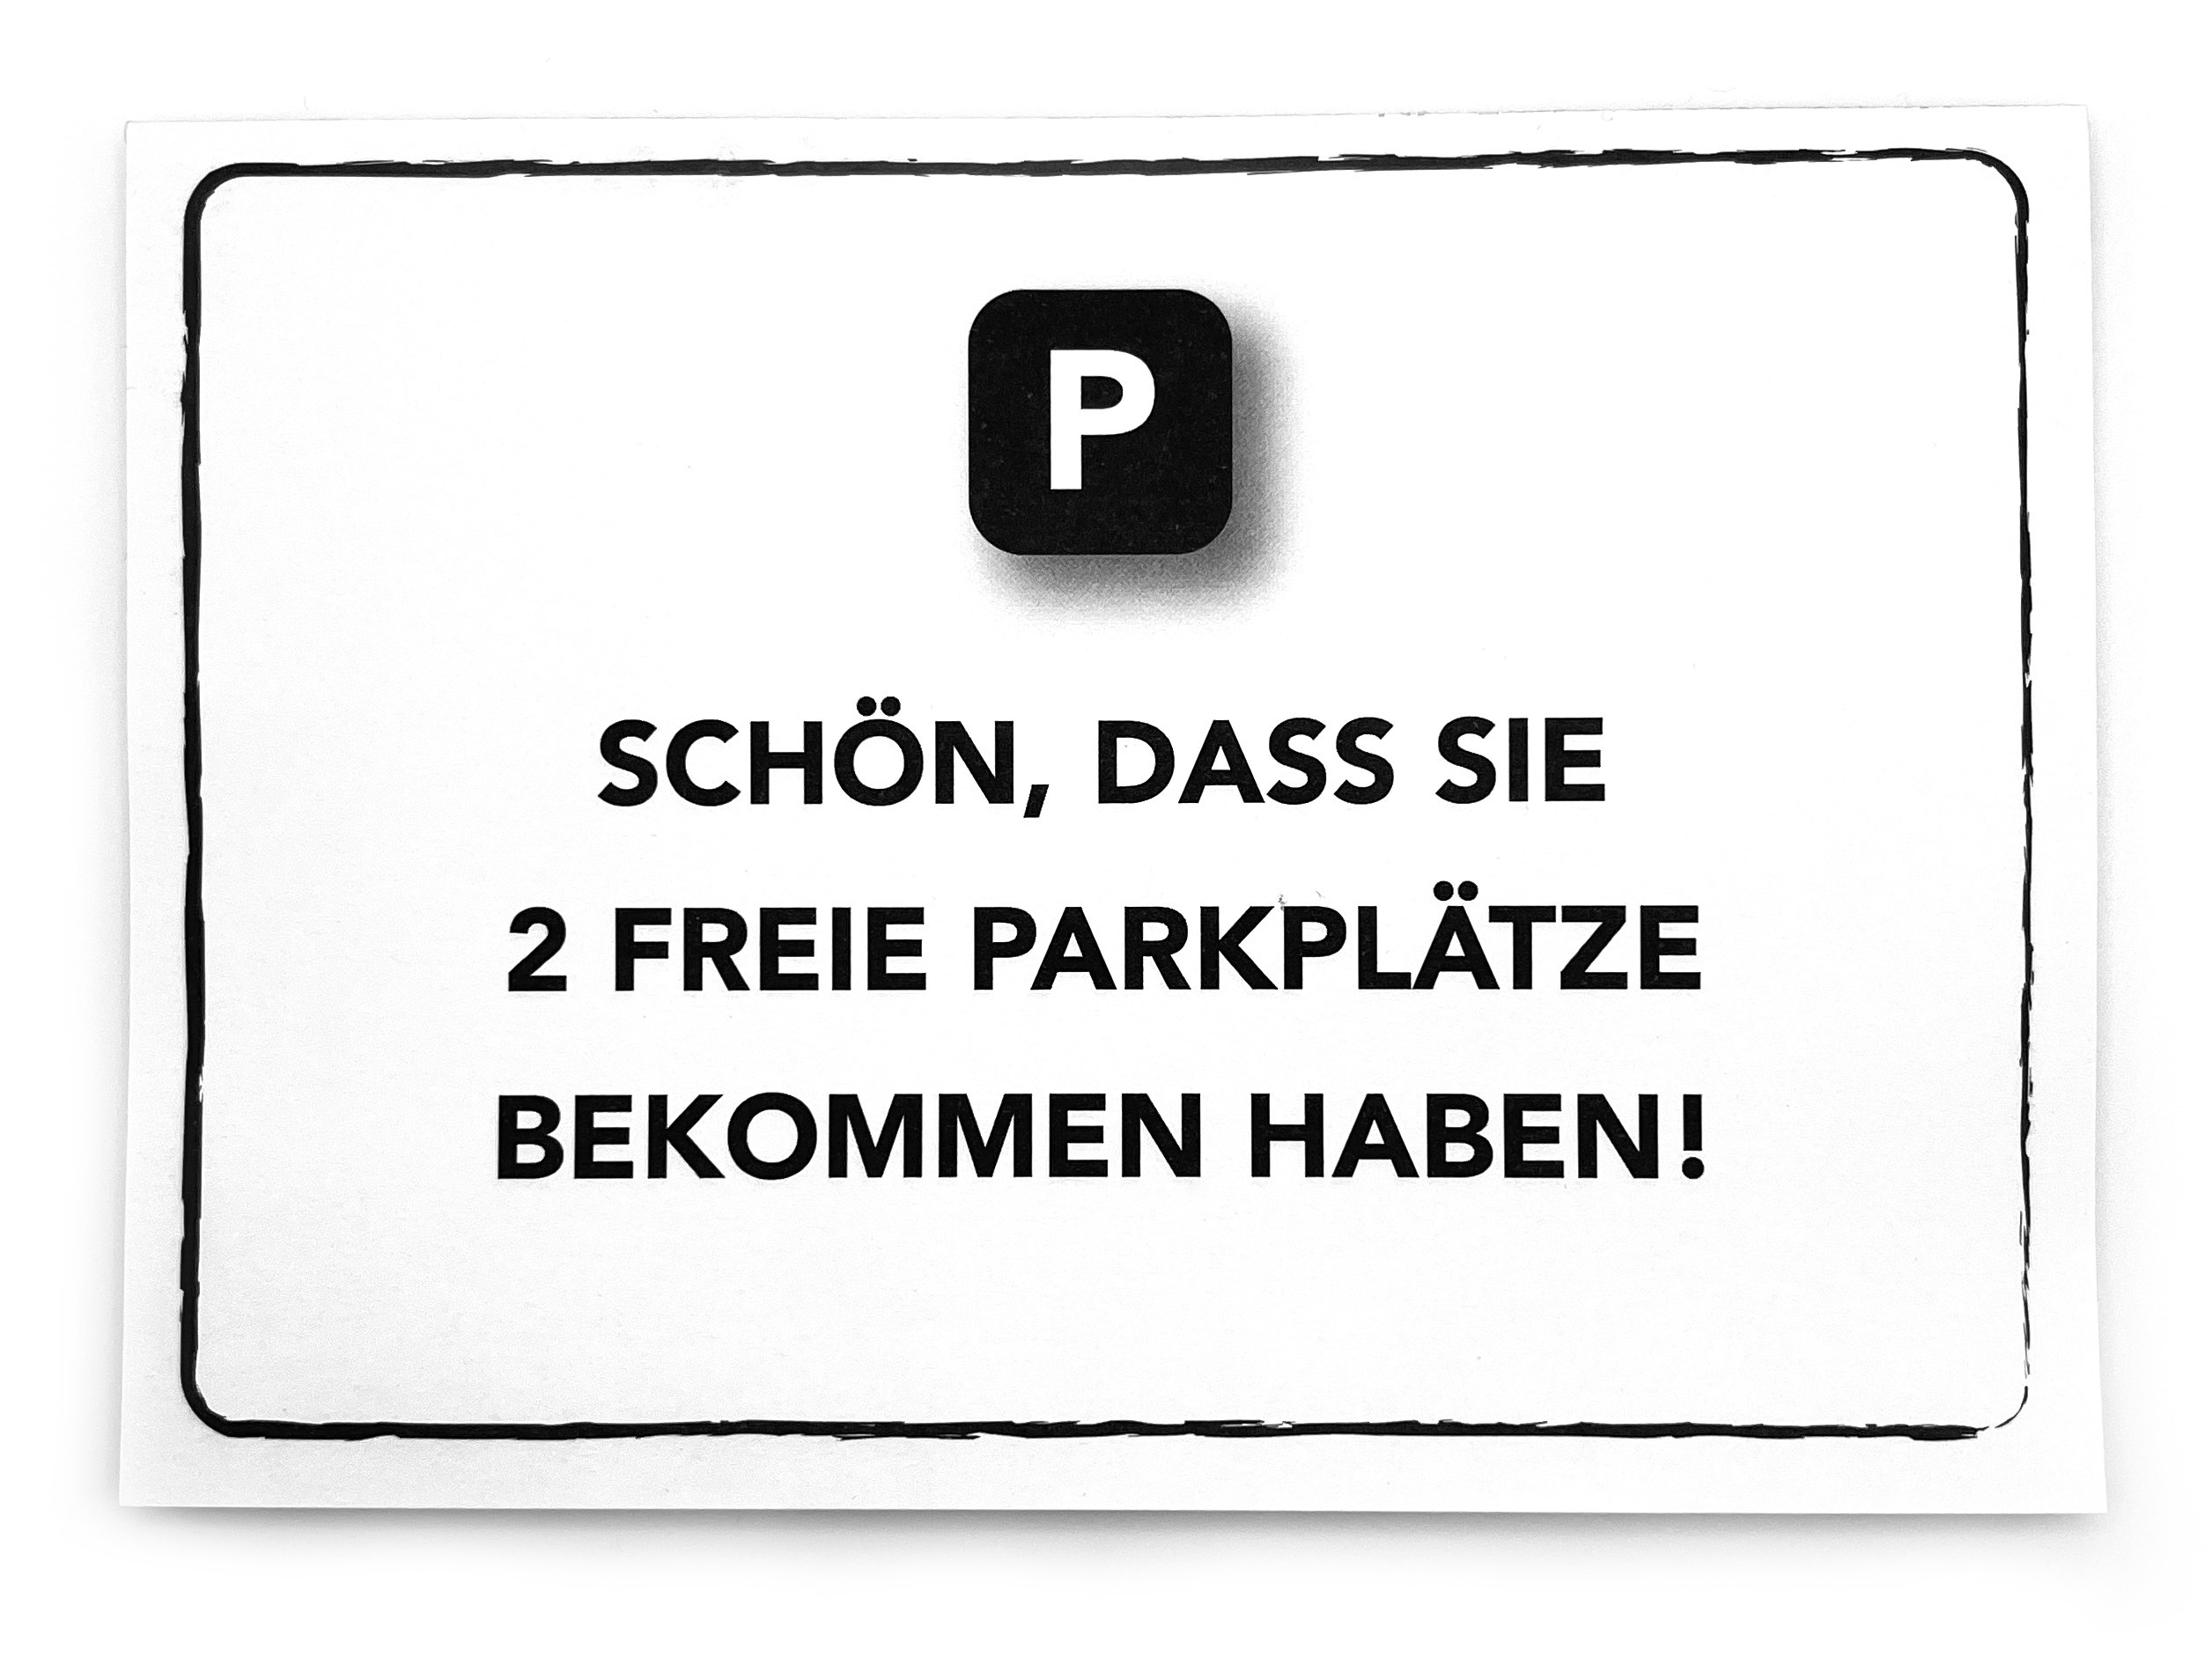 Parking note - .de